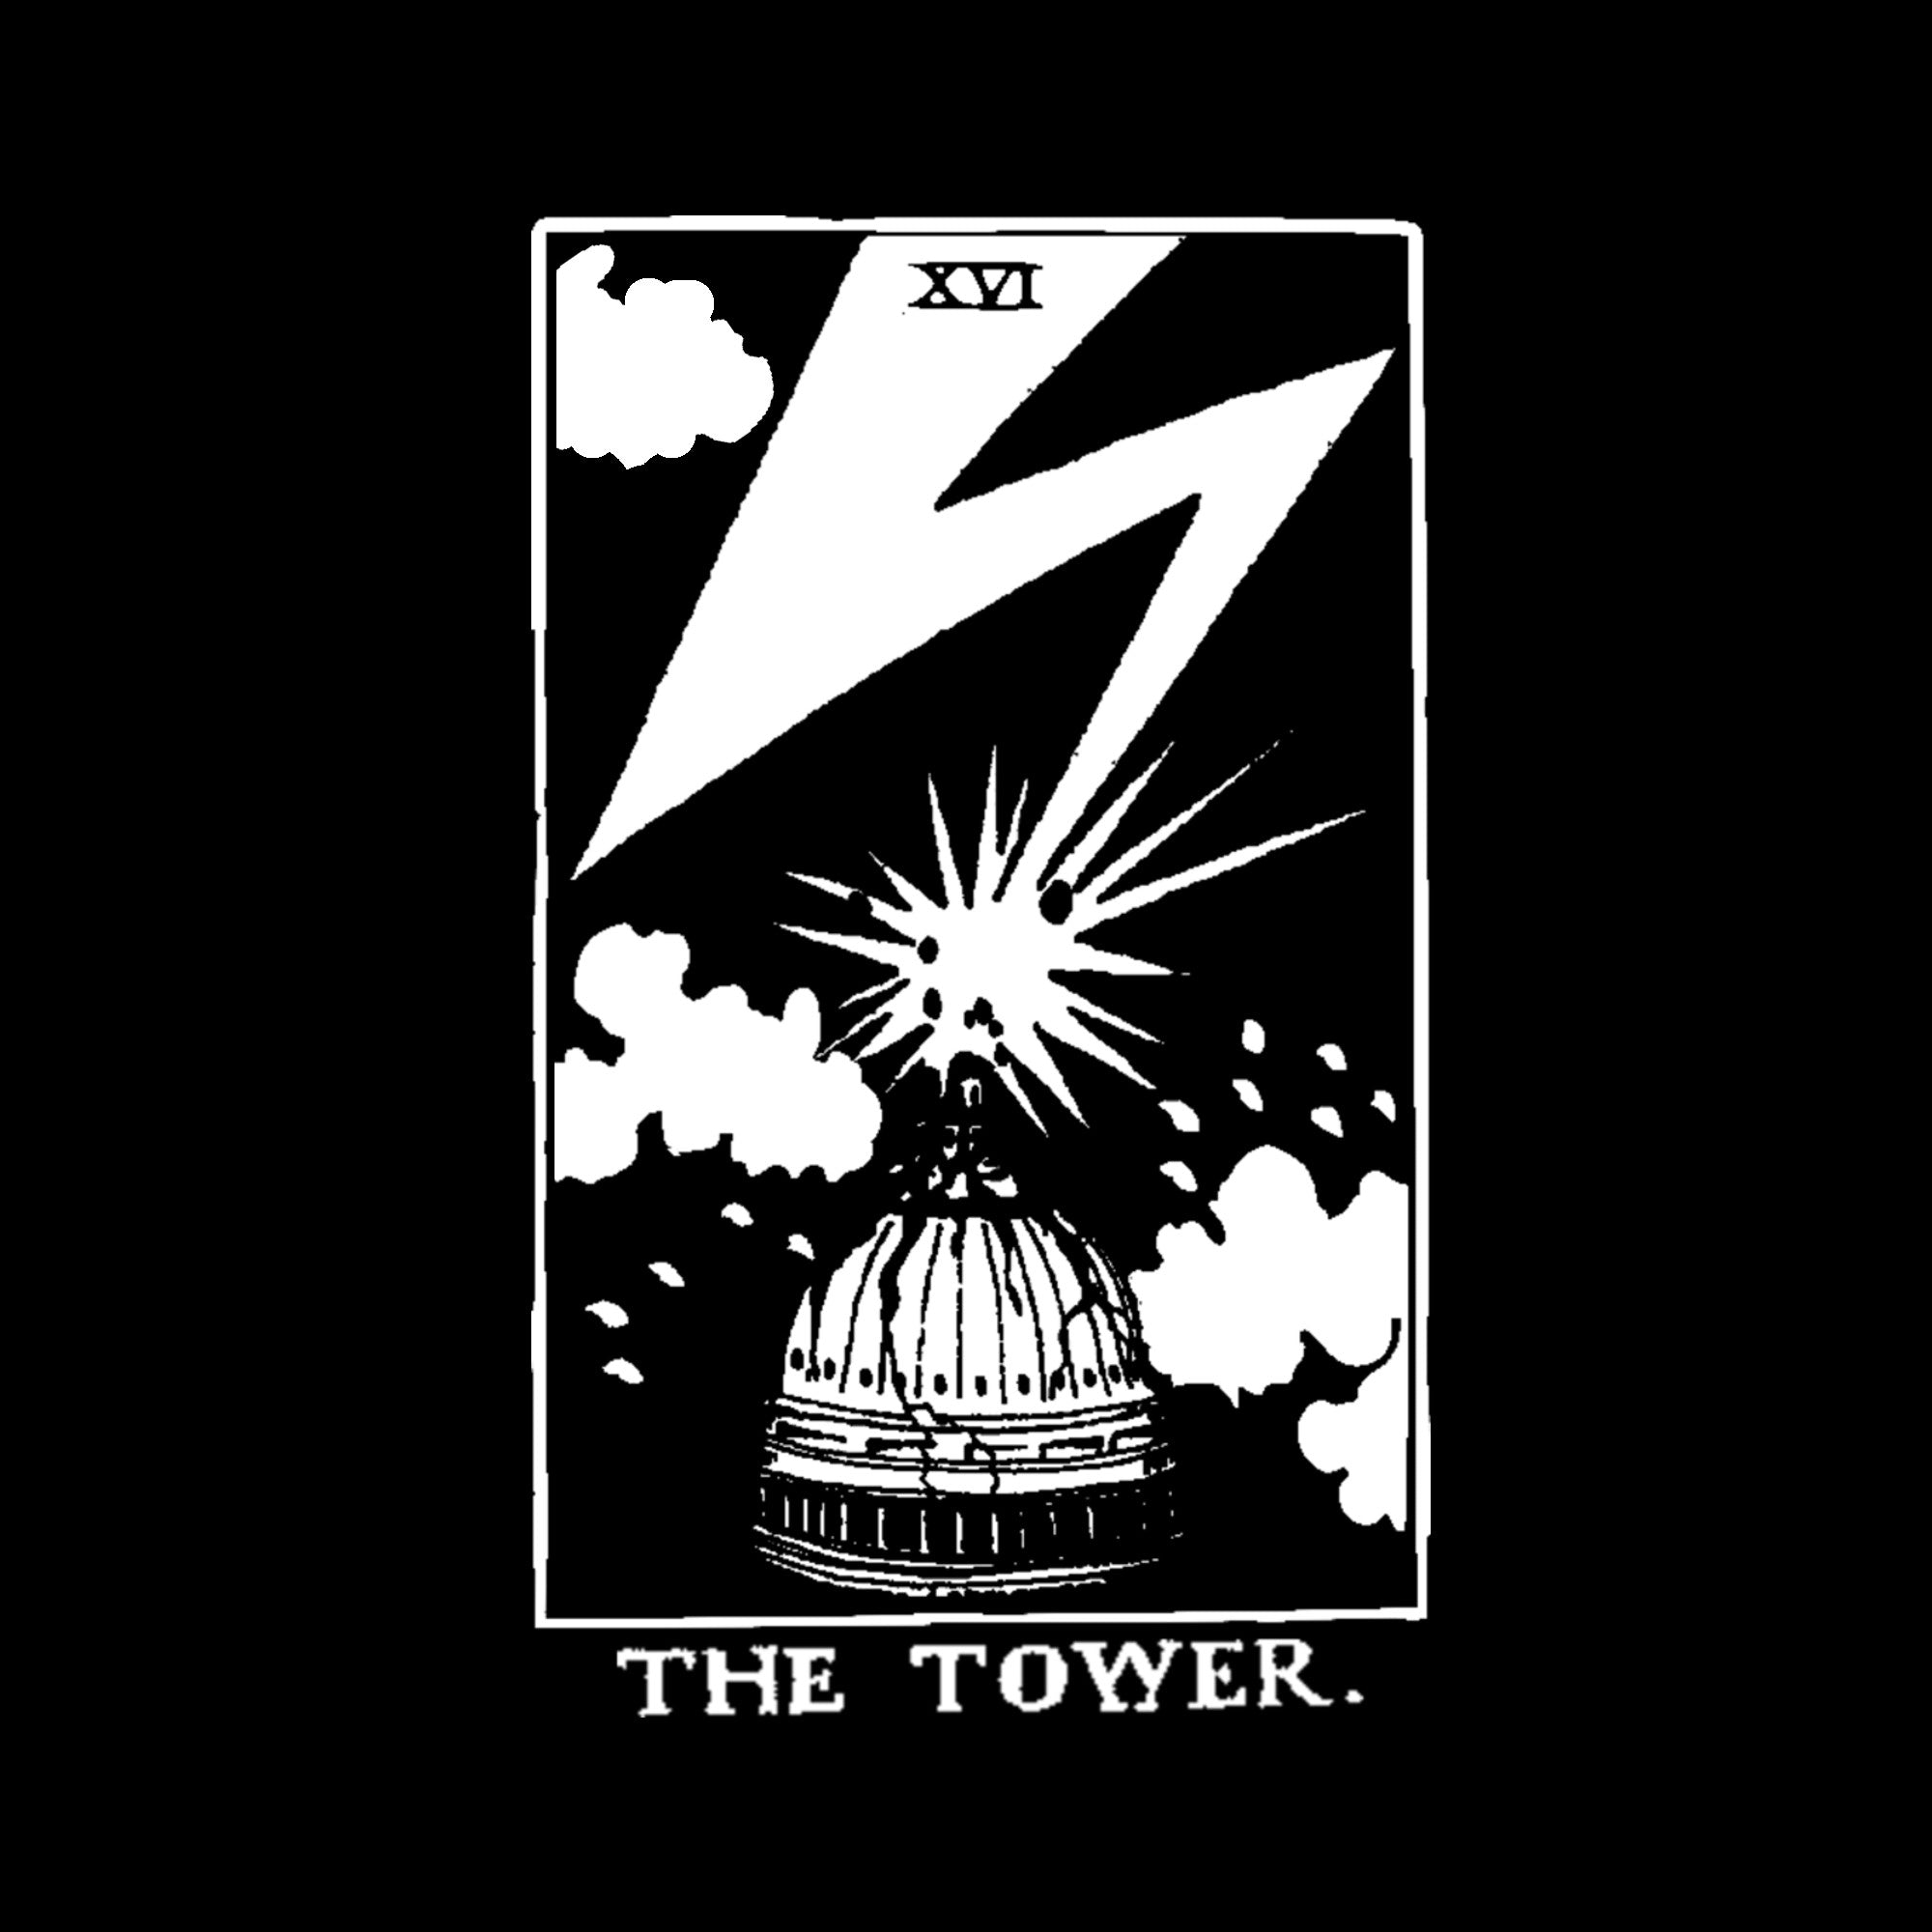 The Tower - Hardcore Punk tarot tee